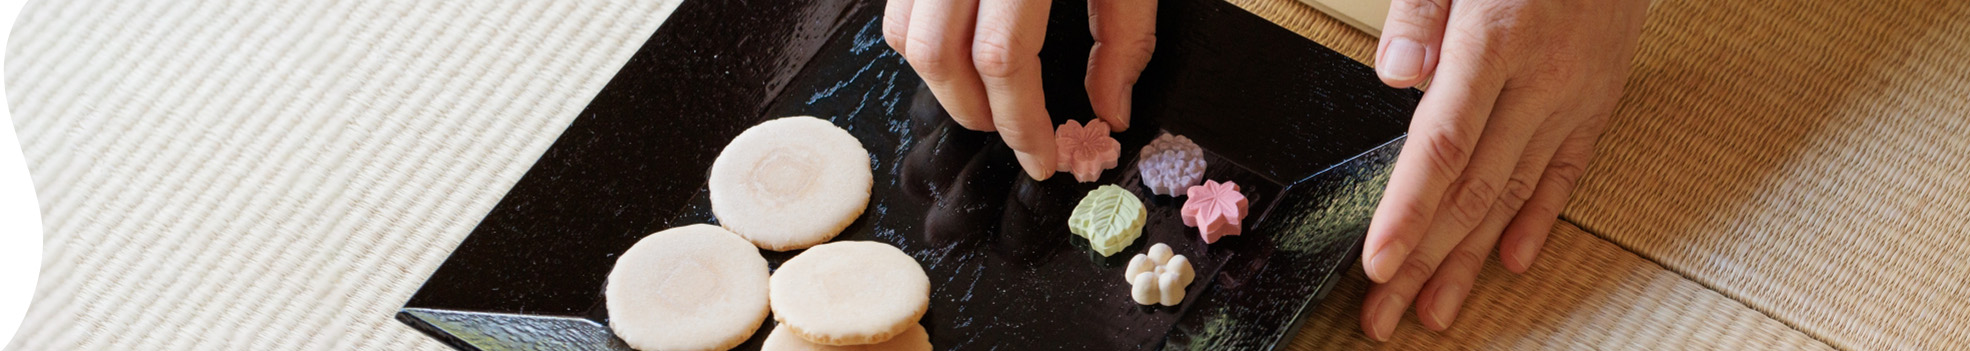 和菓子についてのページタイトルの背景画像。四角形の黒い皿の上に落雁とせんべいが乗っていて、落雁を手で持っている画像。